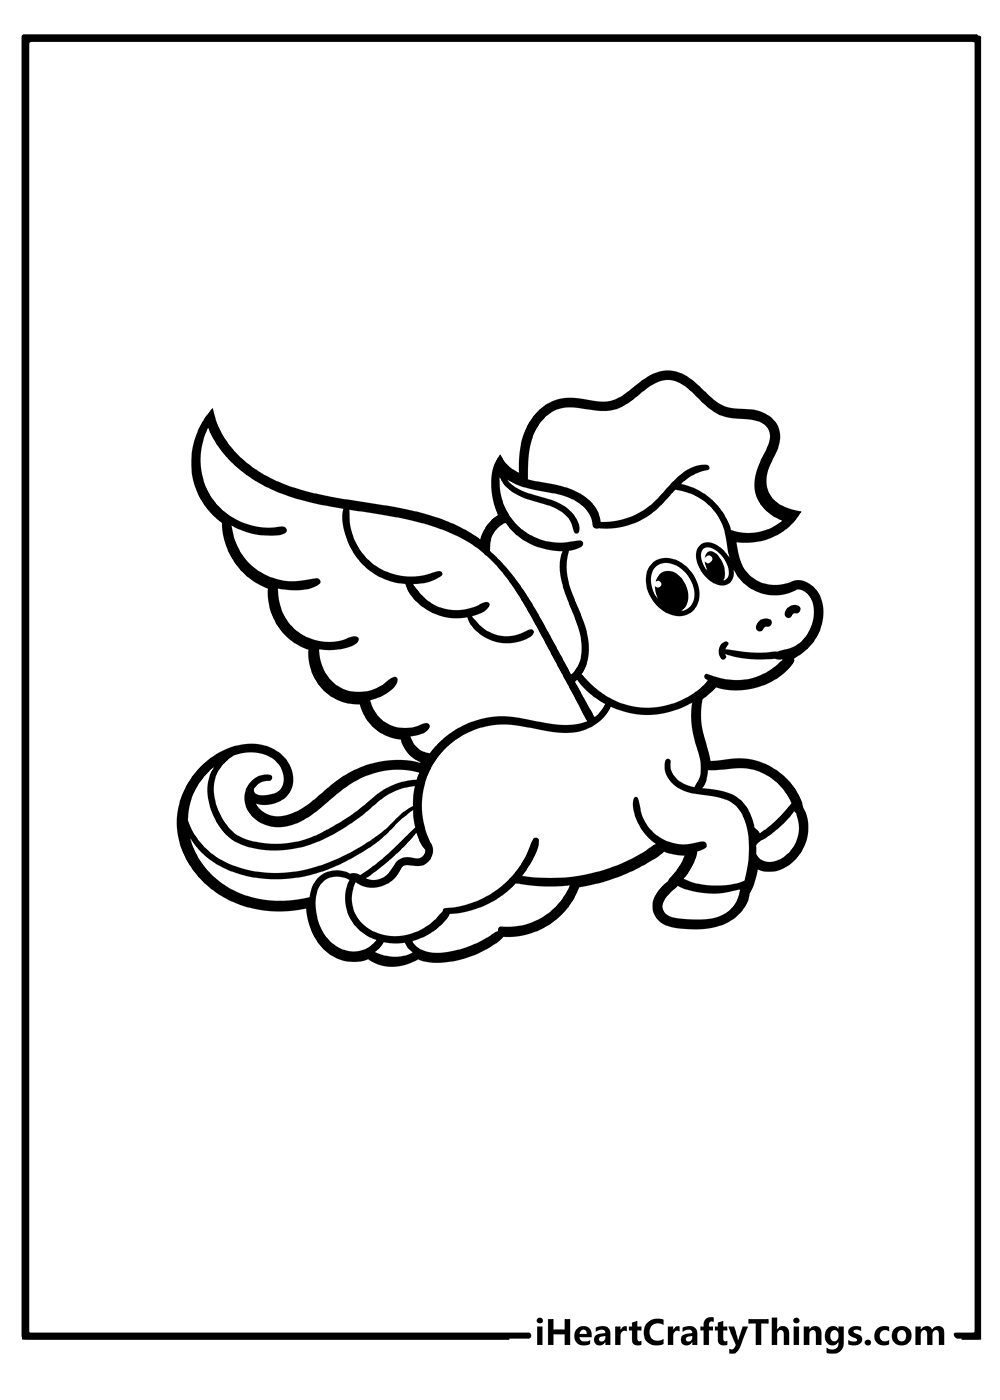 Pegasus Coloring Book free printable